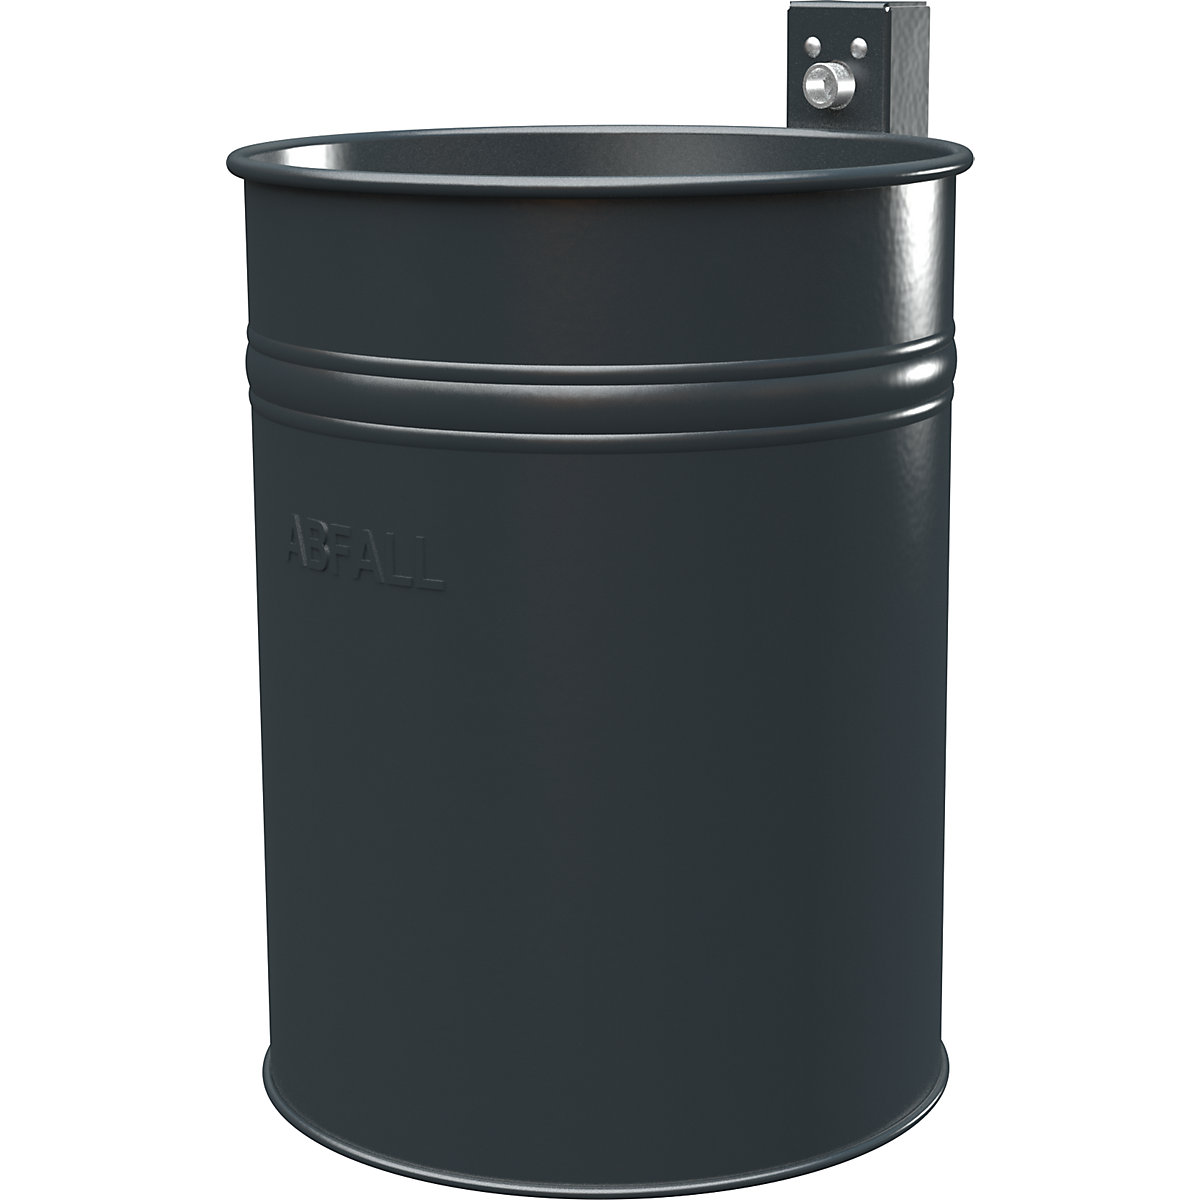 Outdoor-Abfallbehälter, Volumen 35 l, HxØ 430 x 330 mm, anthrazit